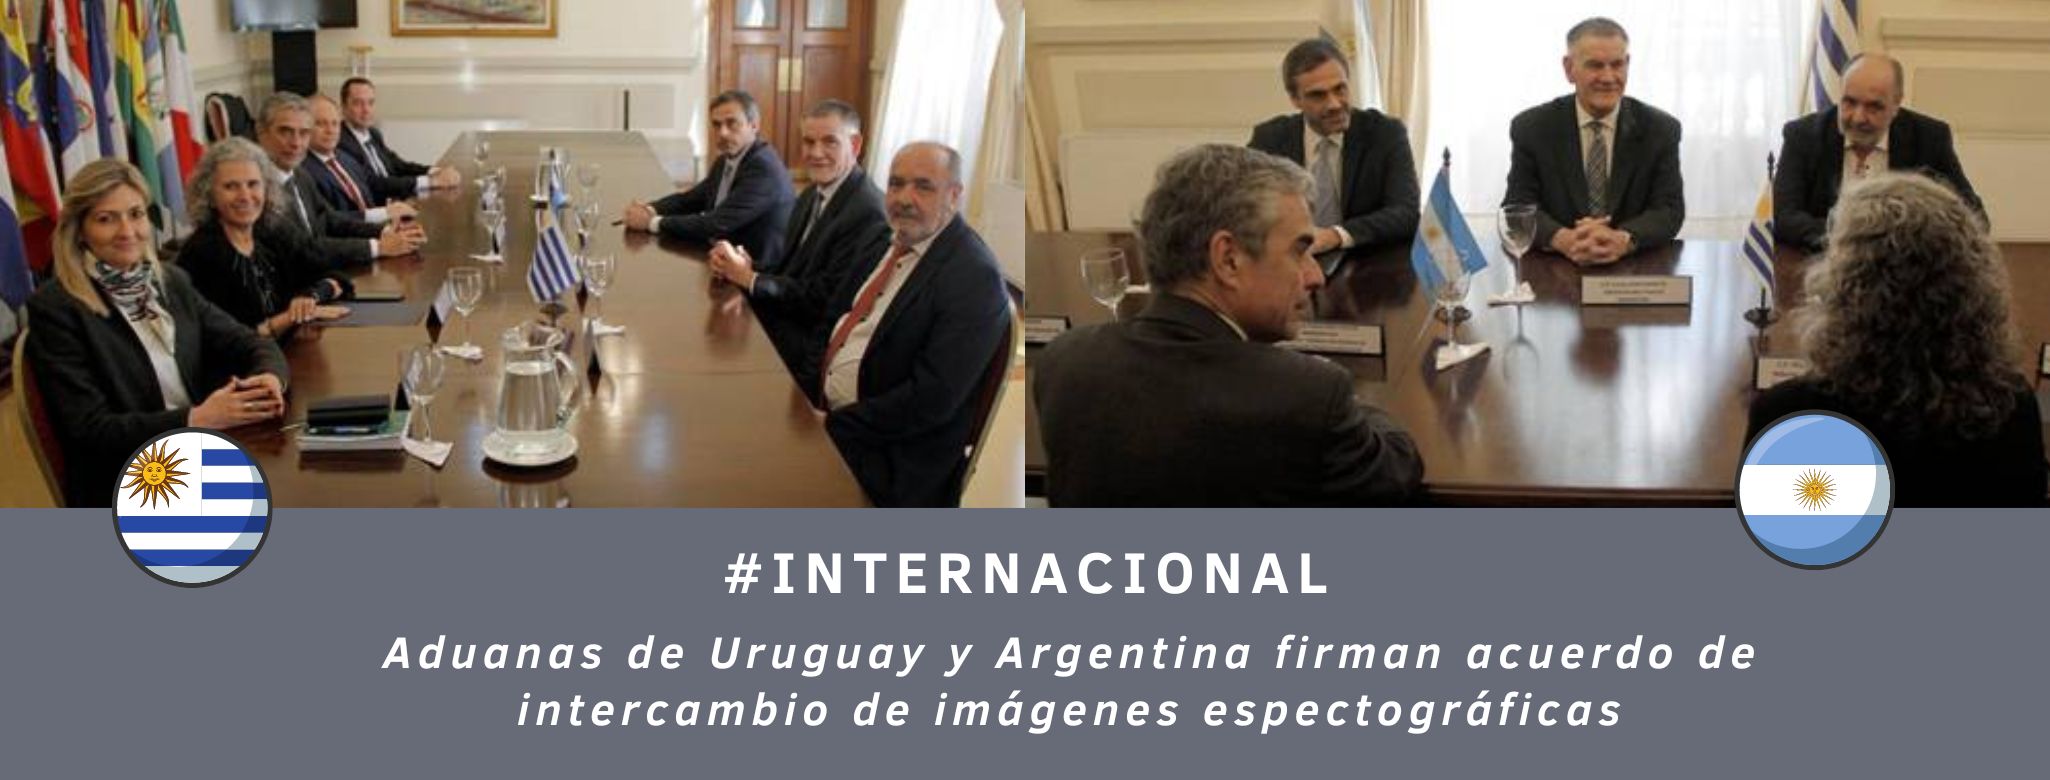 Aduanas de Uruguay y Argentina firman acuerdo de intercambio